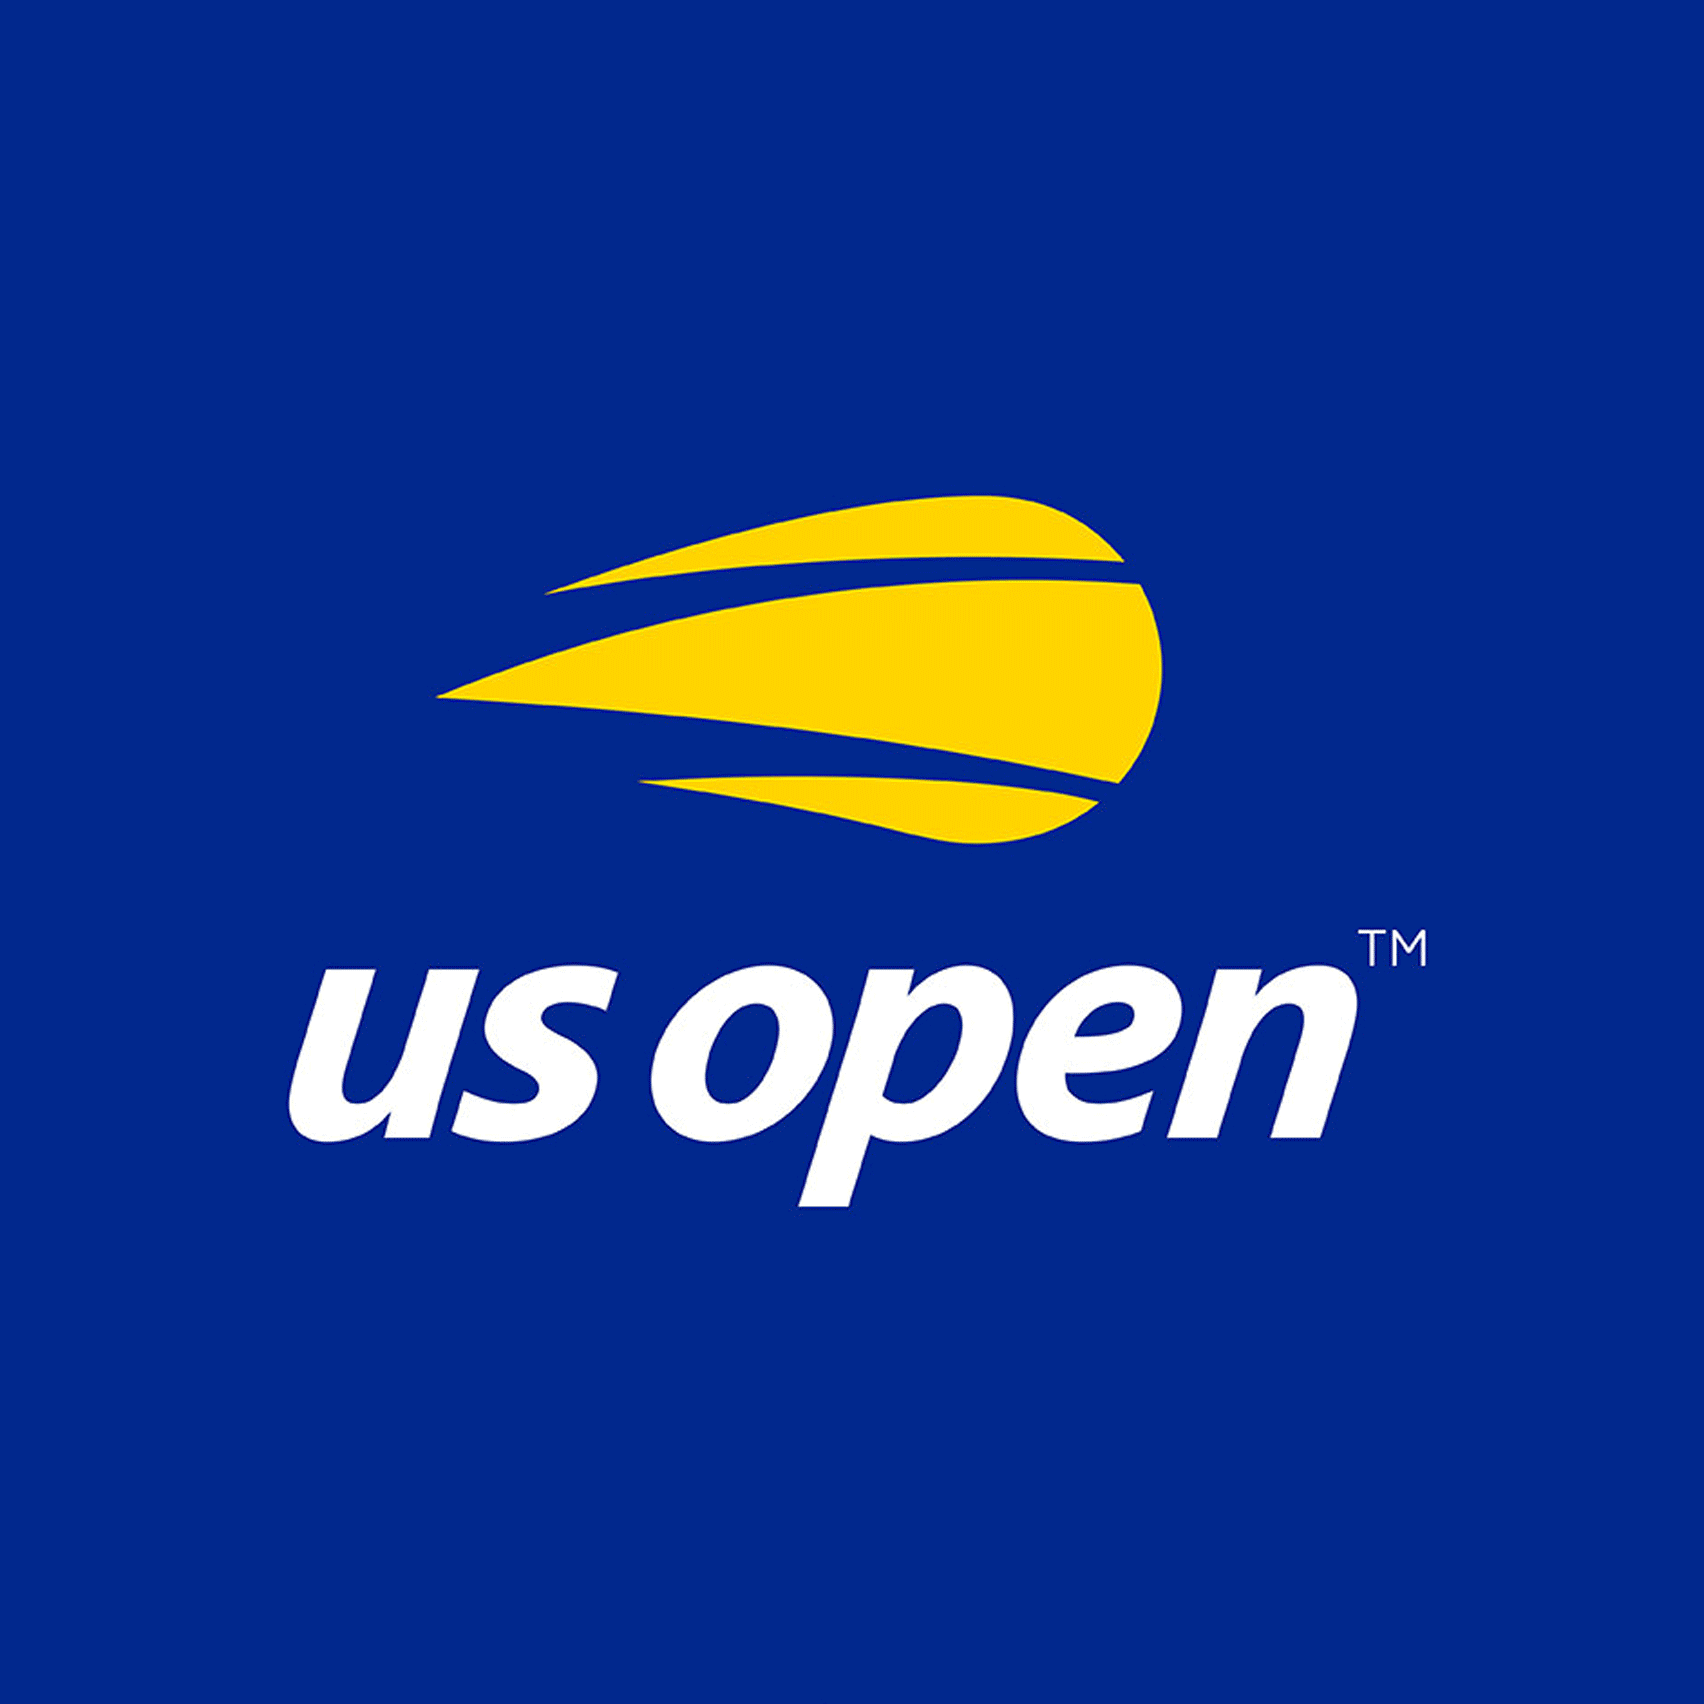 Robert L. Franklin Blog US Open's flaming tennis ball logo receives